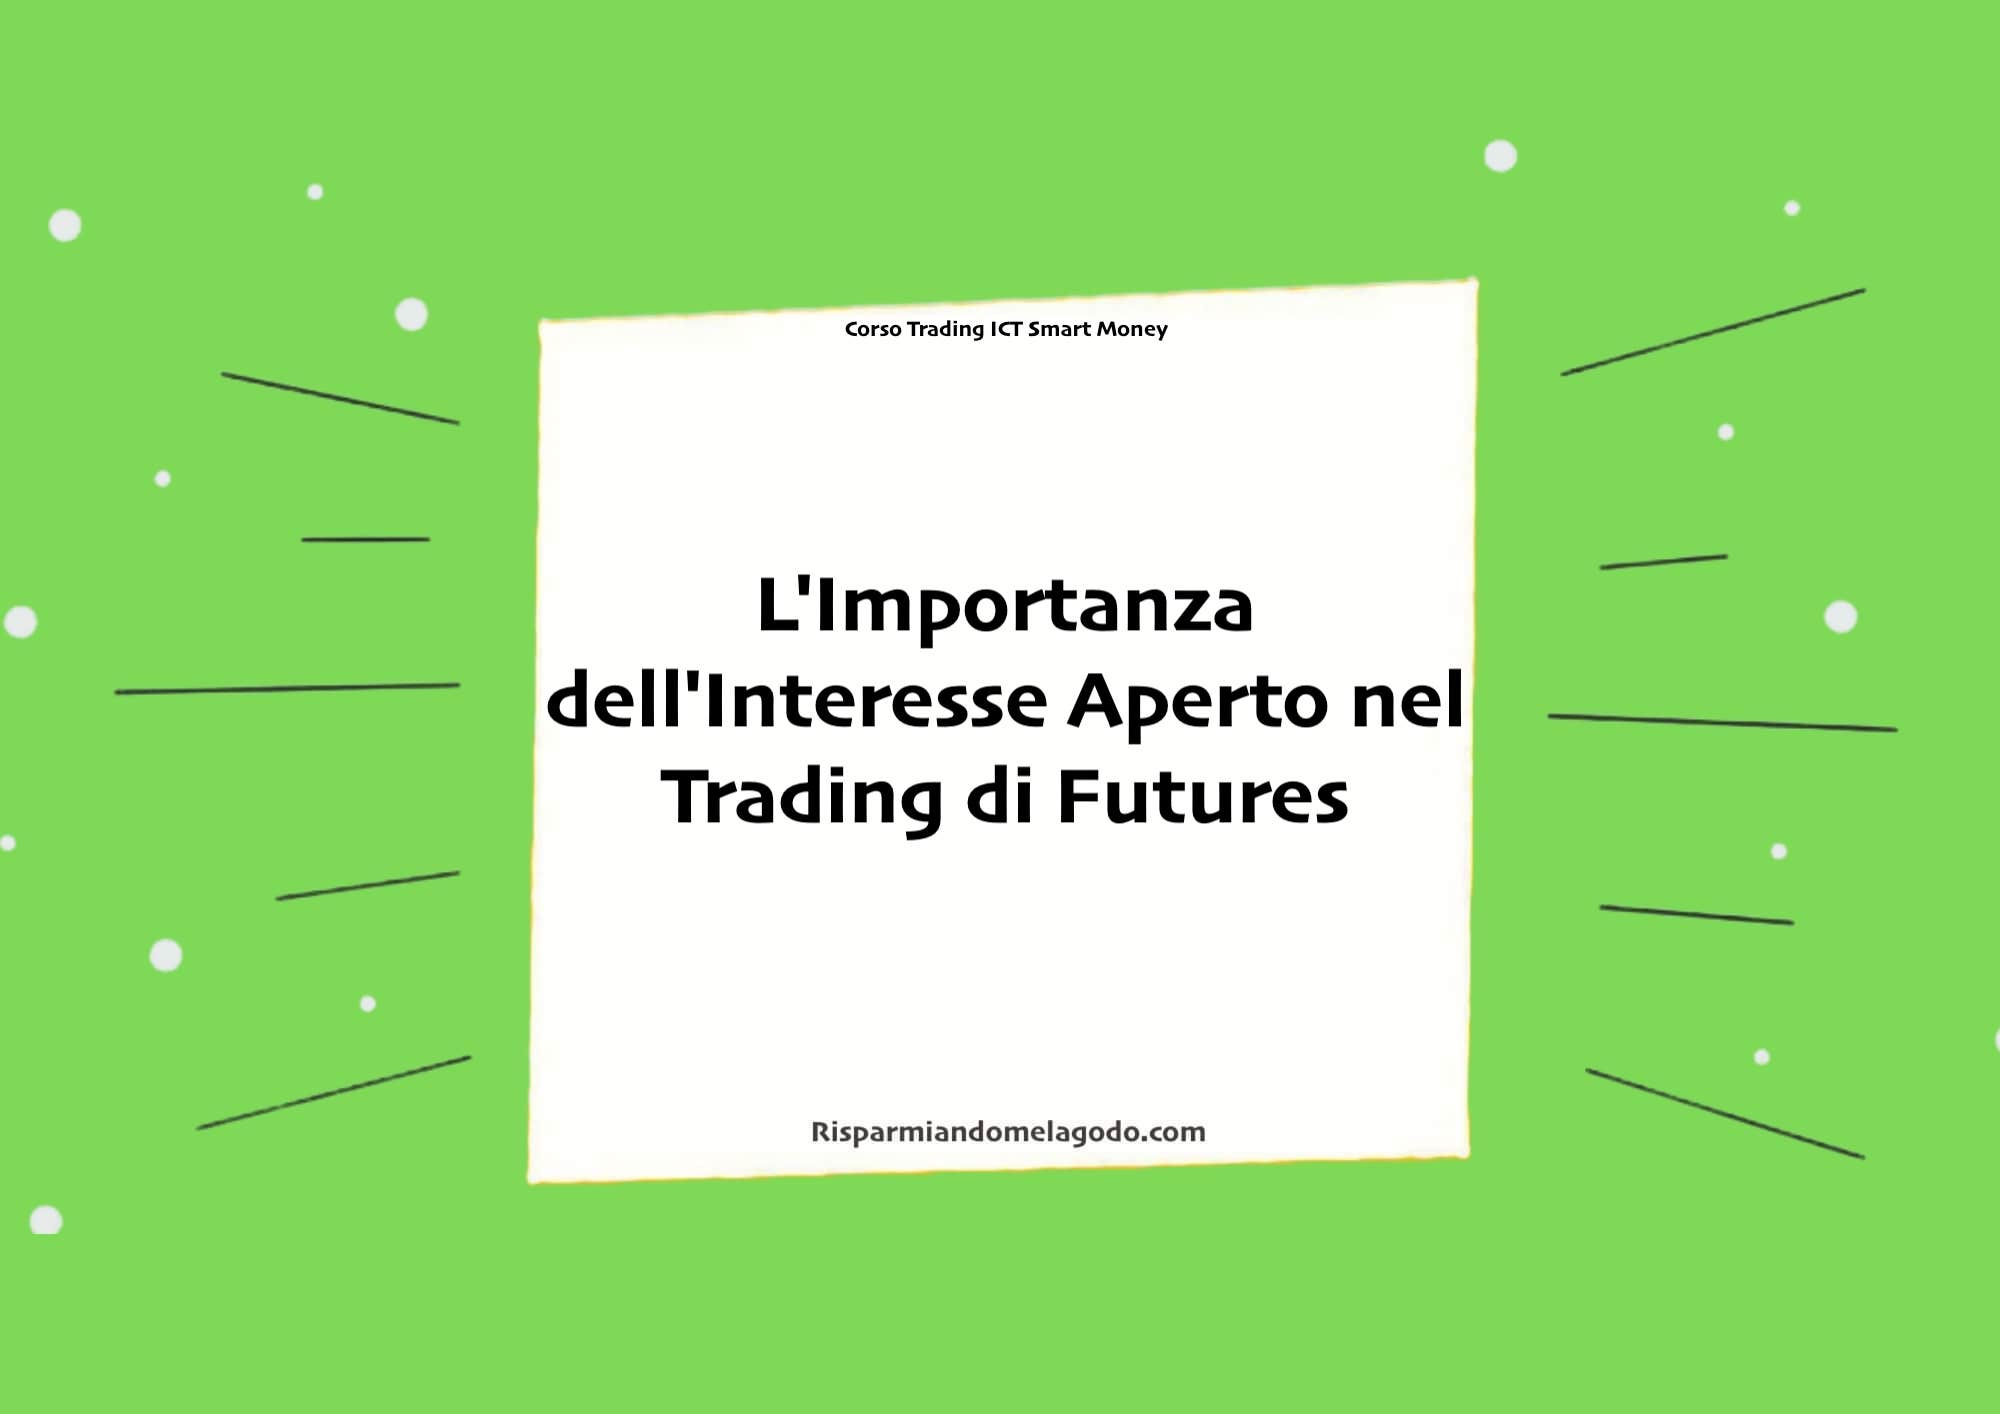 L'Importanza dell'Interesse Aperto nel Trading di Futures